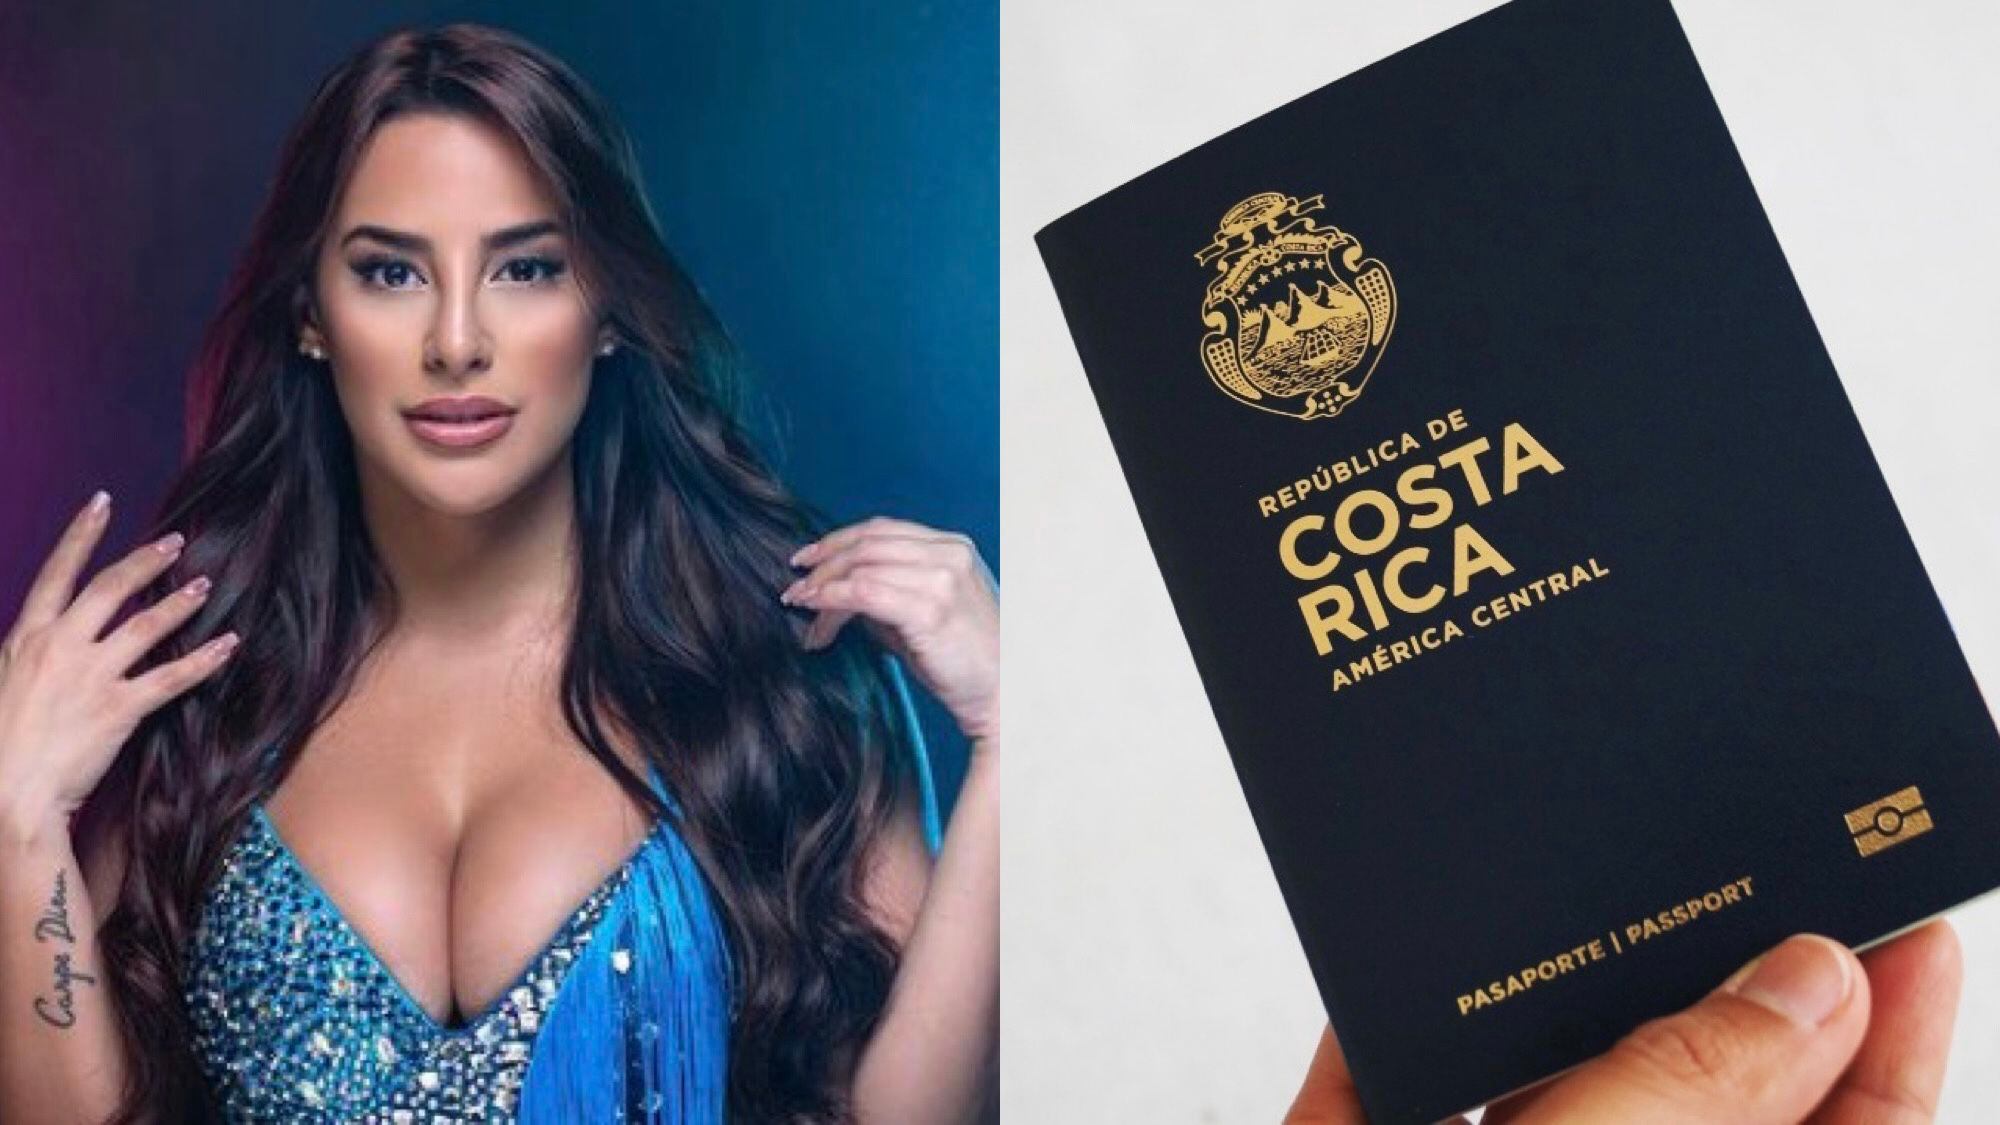 La presentadora de televisión, Kimberly Loaiza, perdió el pasaporte cuando arribó a Panamá, en un viaje 'fugaz' junto a dos amigas. 